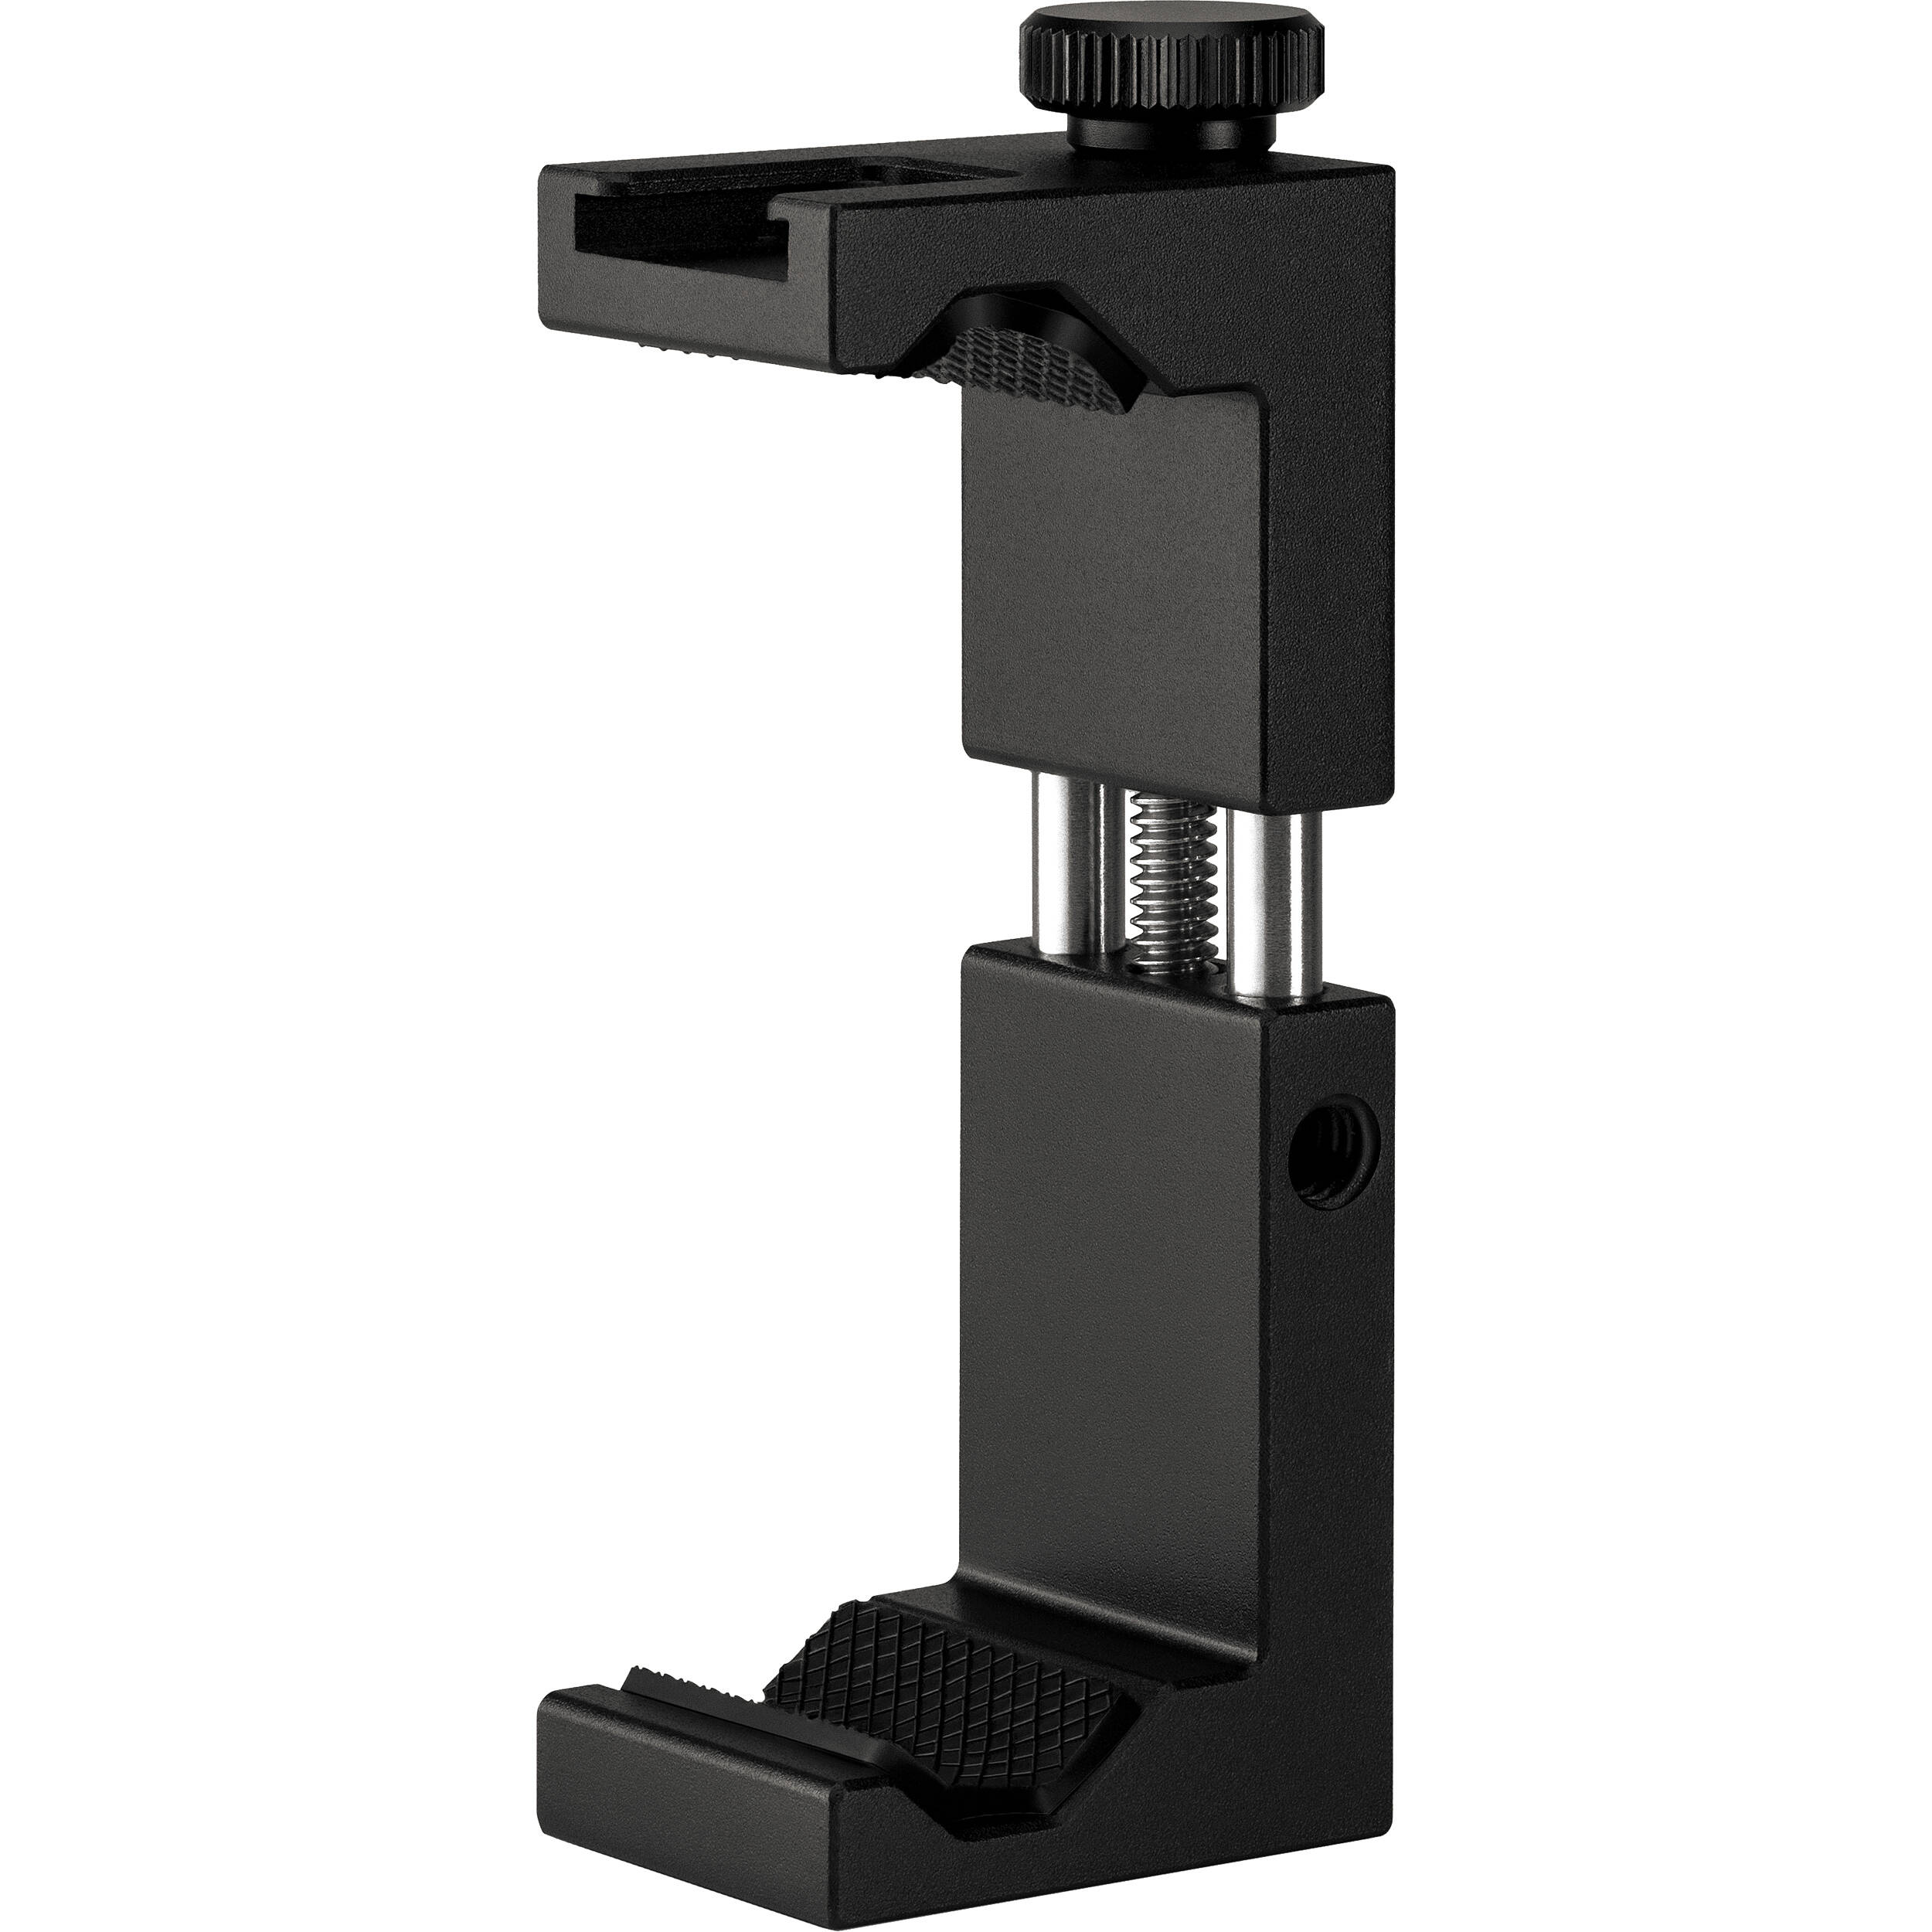 Kit Vlogger Rode - Videomic Me-L, Trépied 2, Smart Grip, Microled Light & Accessories - Pour les appareils USB-C